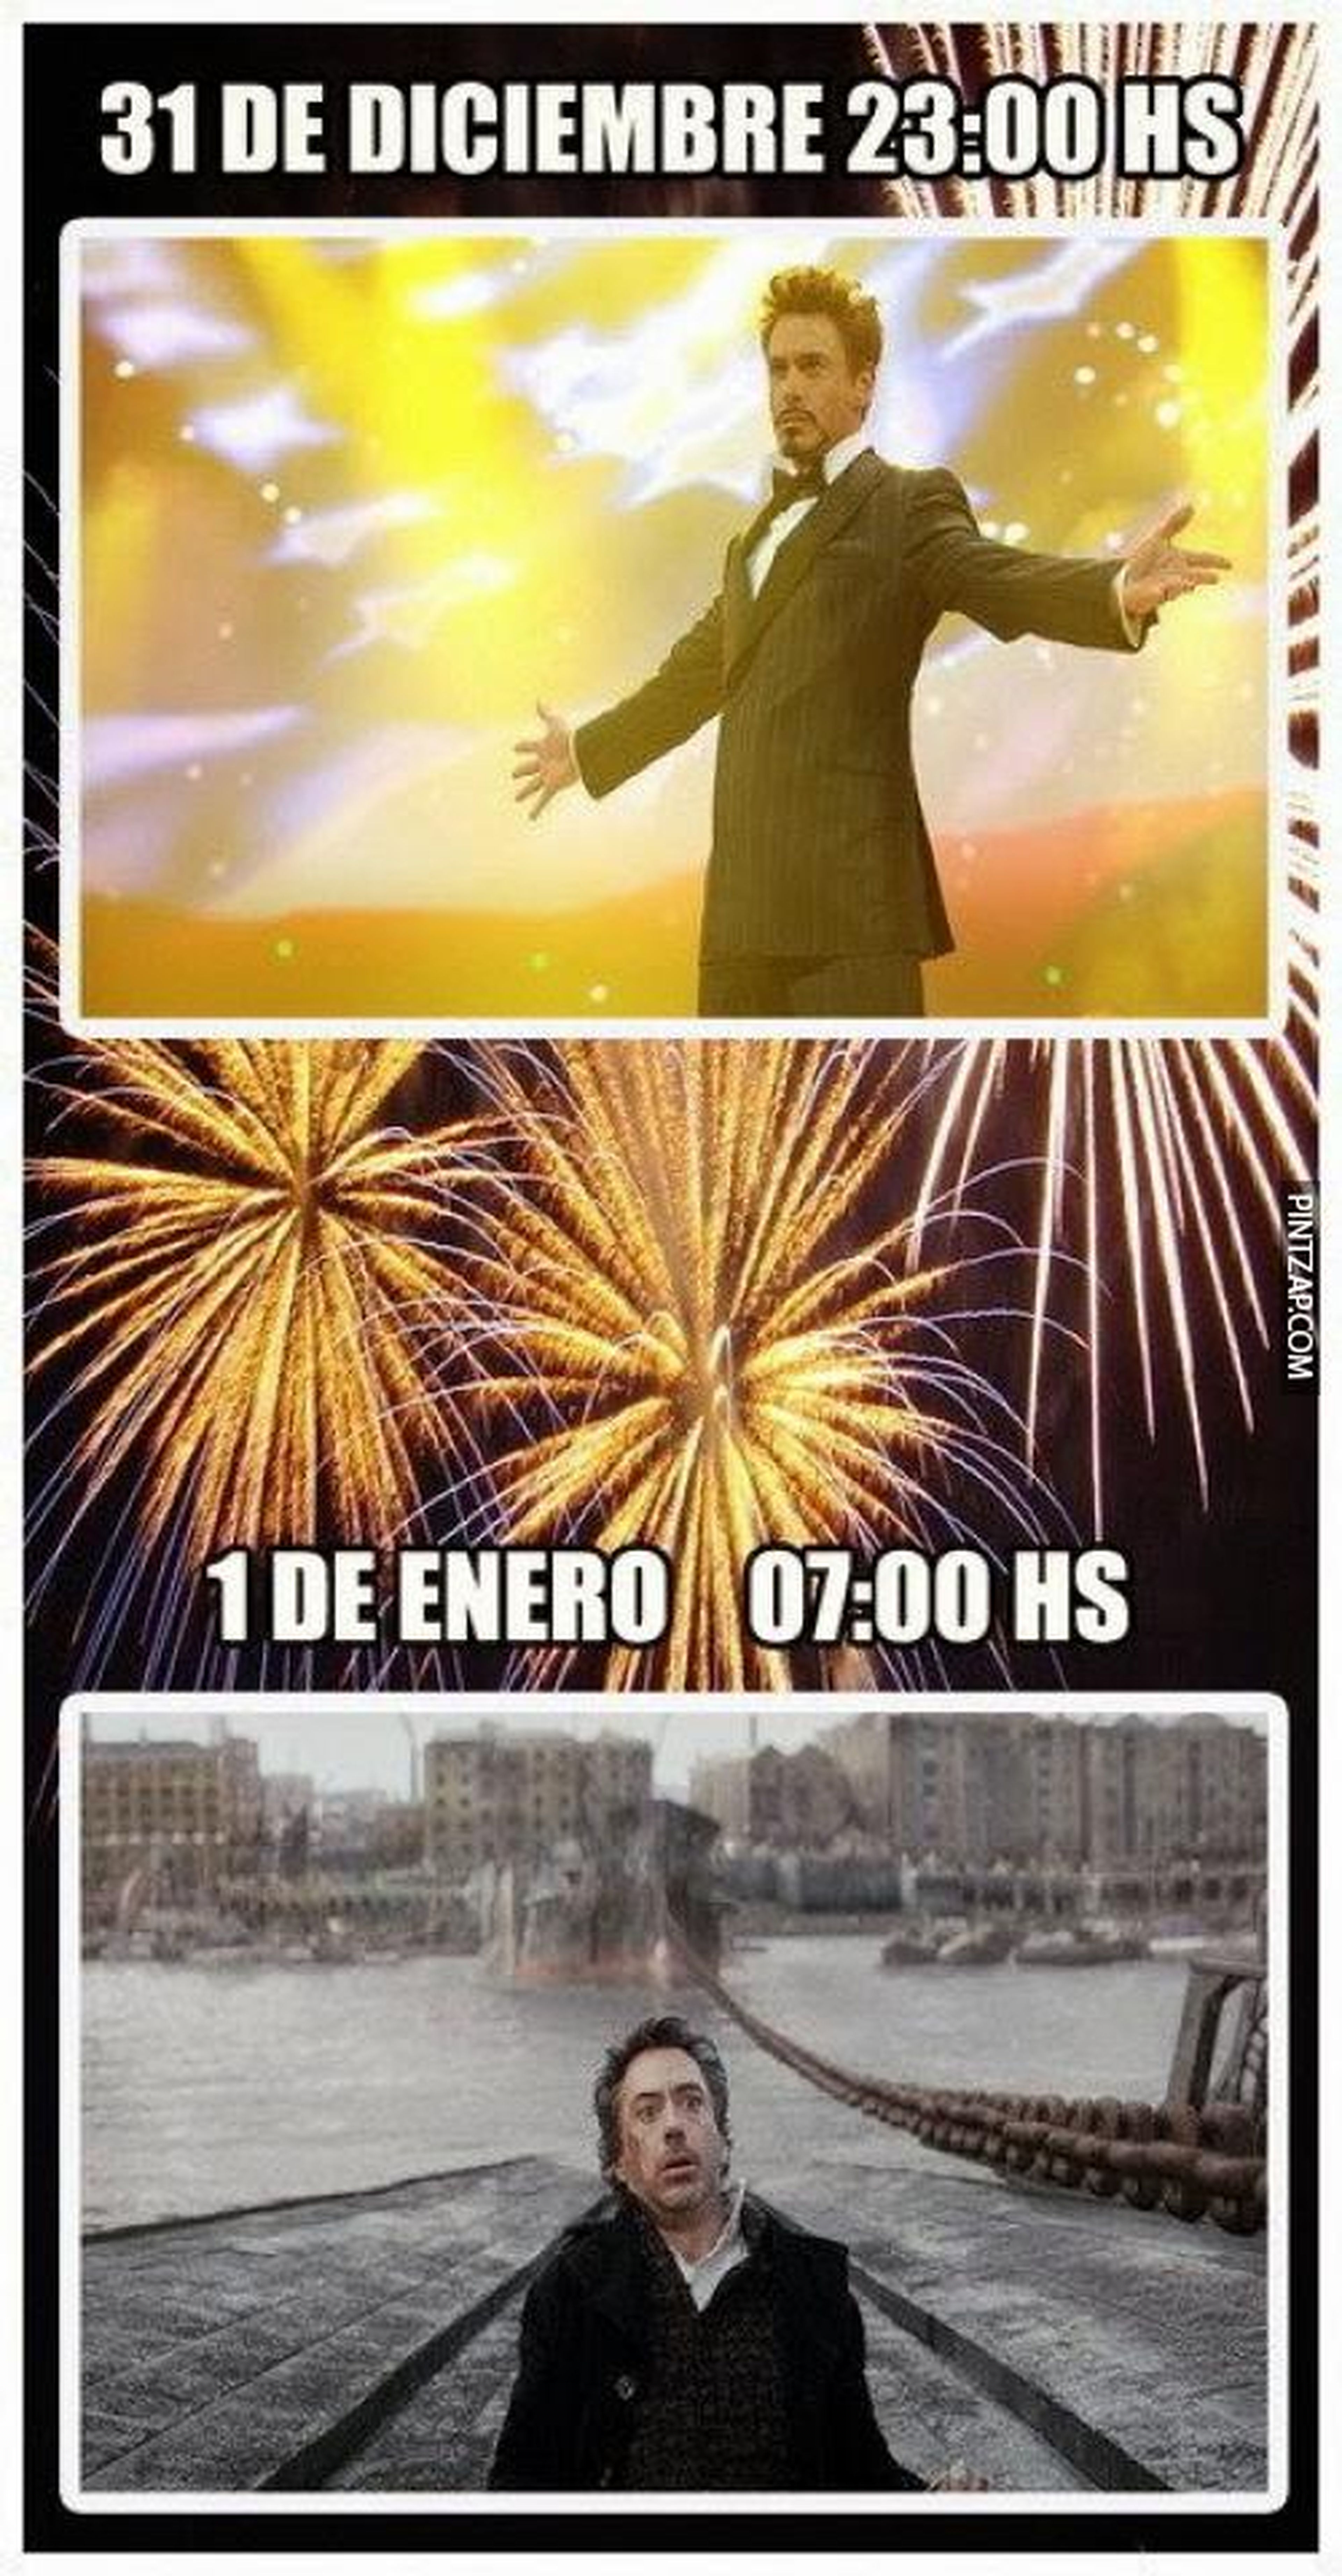 Los mejores memes para felicitar el fin de año y el año nuevo 2018